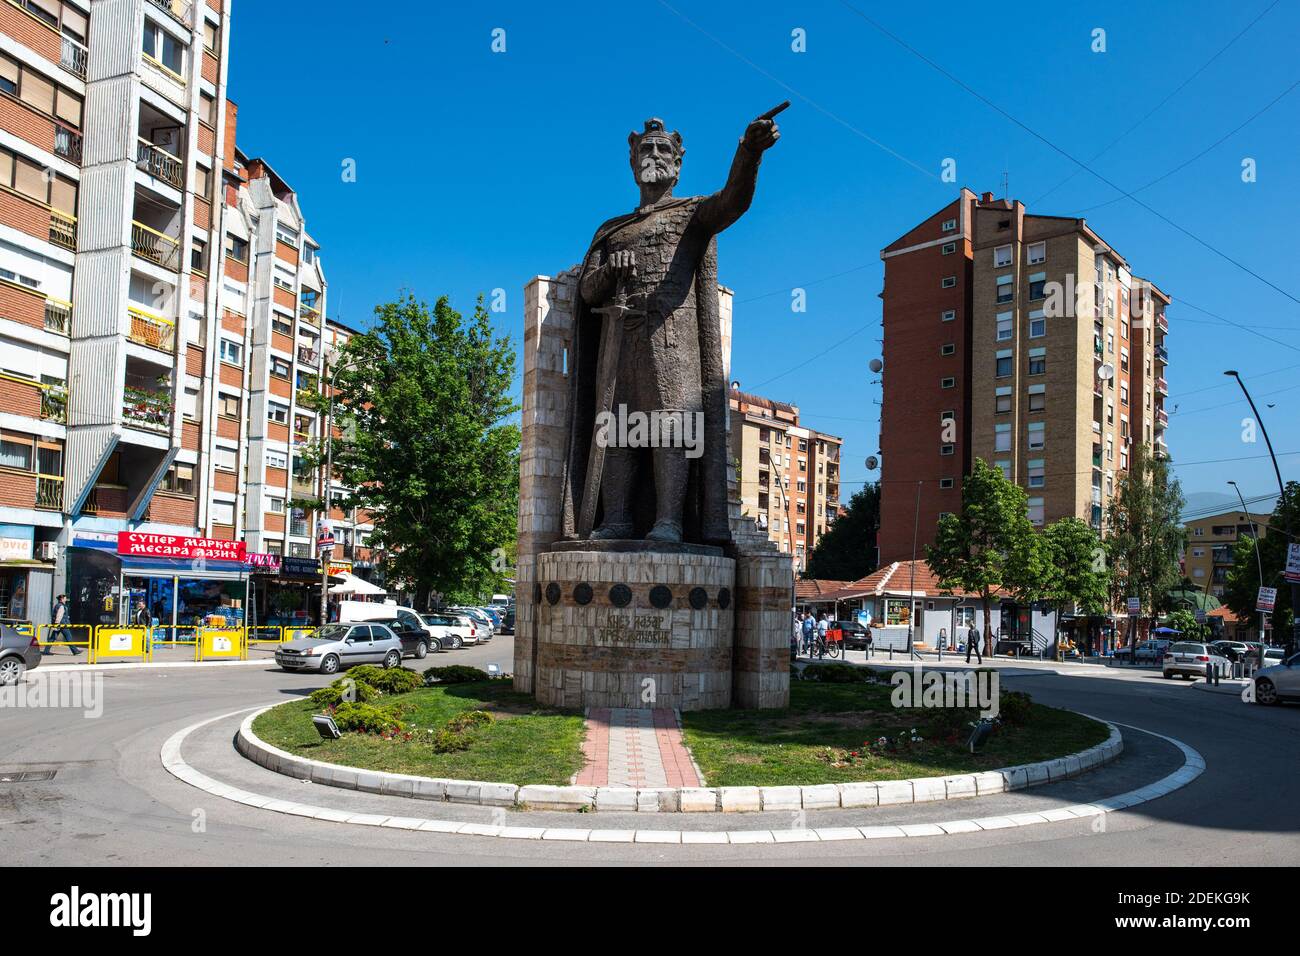 Kosovska Mitrovica, 17 mai 2019. À l'époque de Tito, c'était une grande cité industrielle, dont l'essor reposait sur les mines de lignite de TrepÄa. Aujourd'hui, la ville est divisée en deux: serbes au nord, albanais au sud. Statue du Prince Lazar HrebeljanoviÄ‡, au Nord de la ville. Donation de la Serbie en 2016. Stock Photo